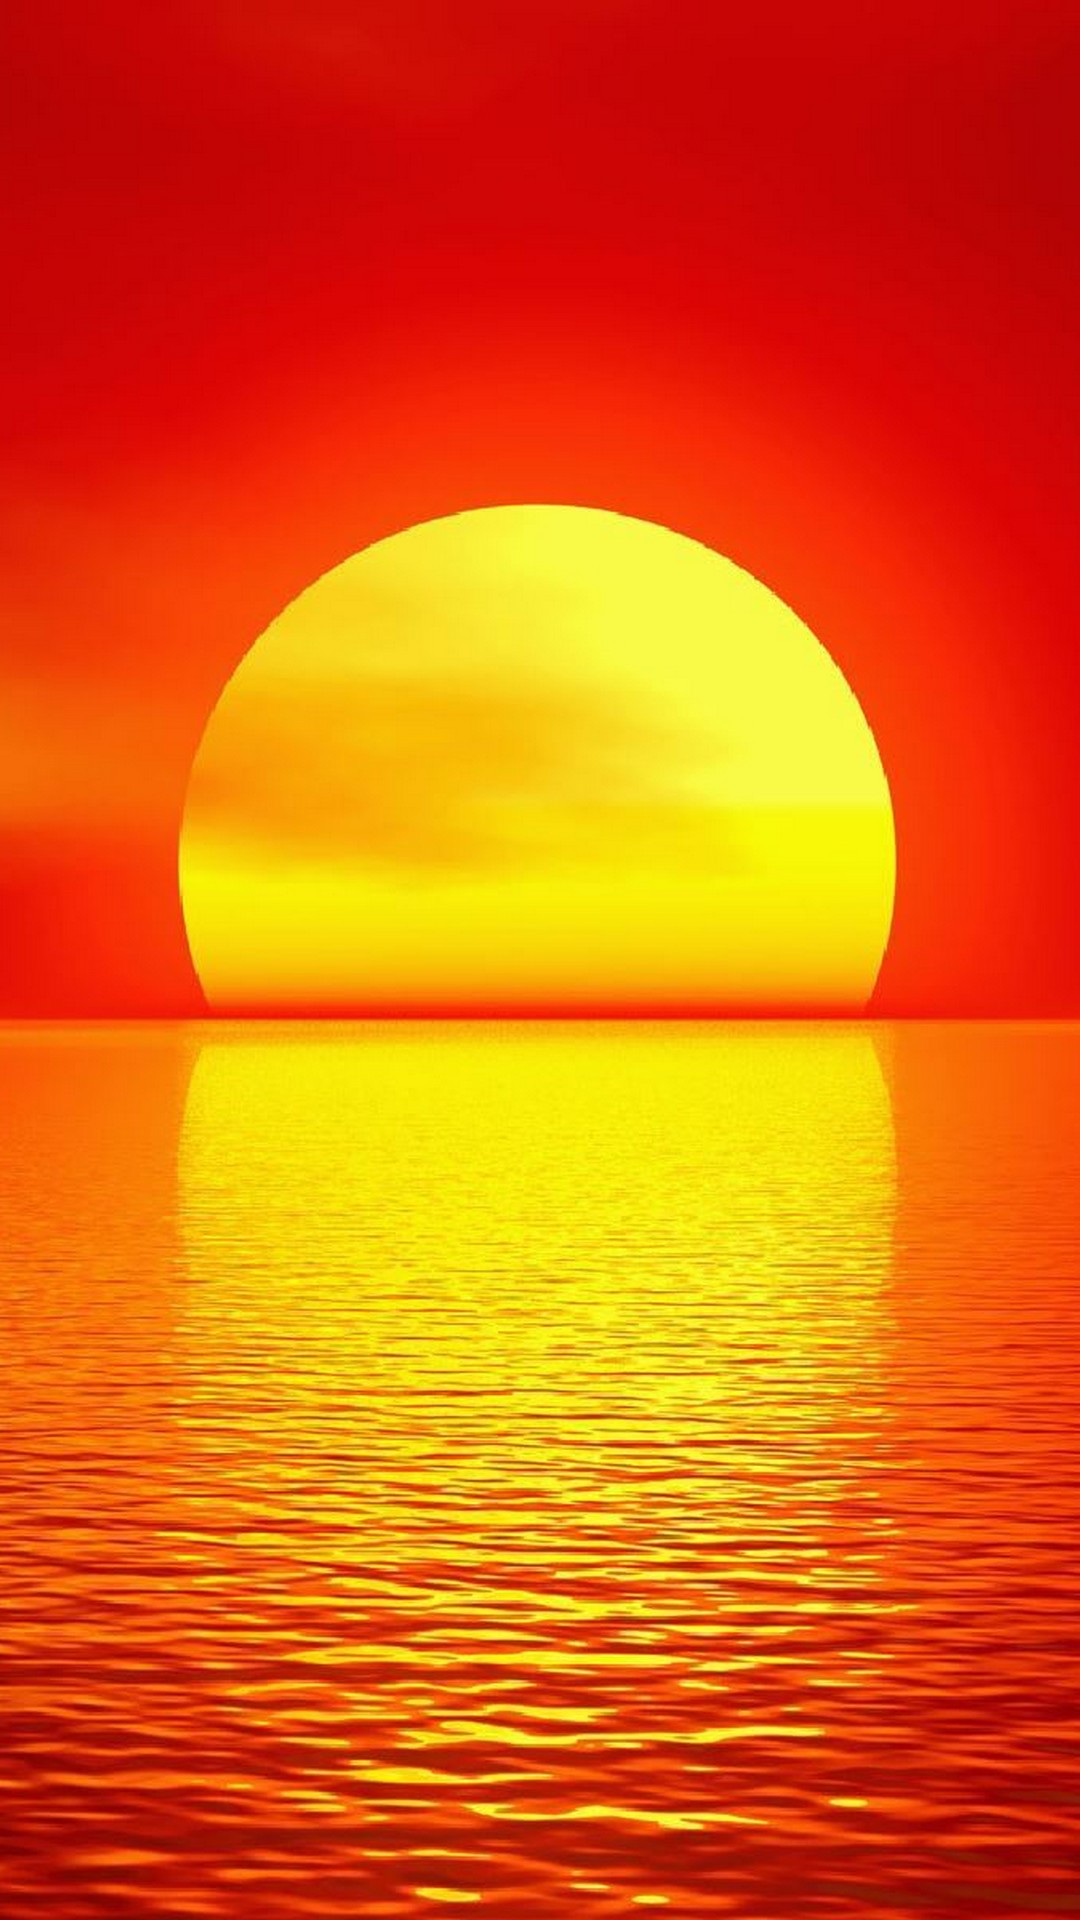 sunset wallpaper,horizon,sky,orange,yellow,sunrise